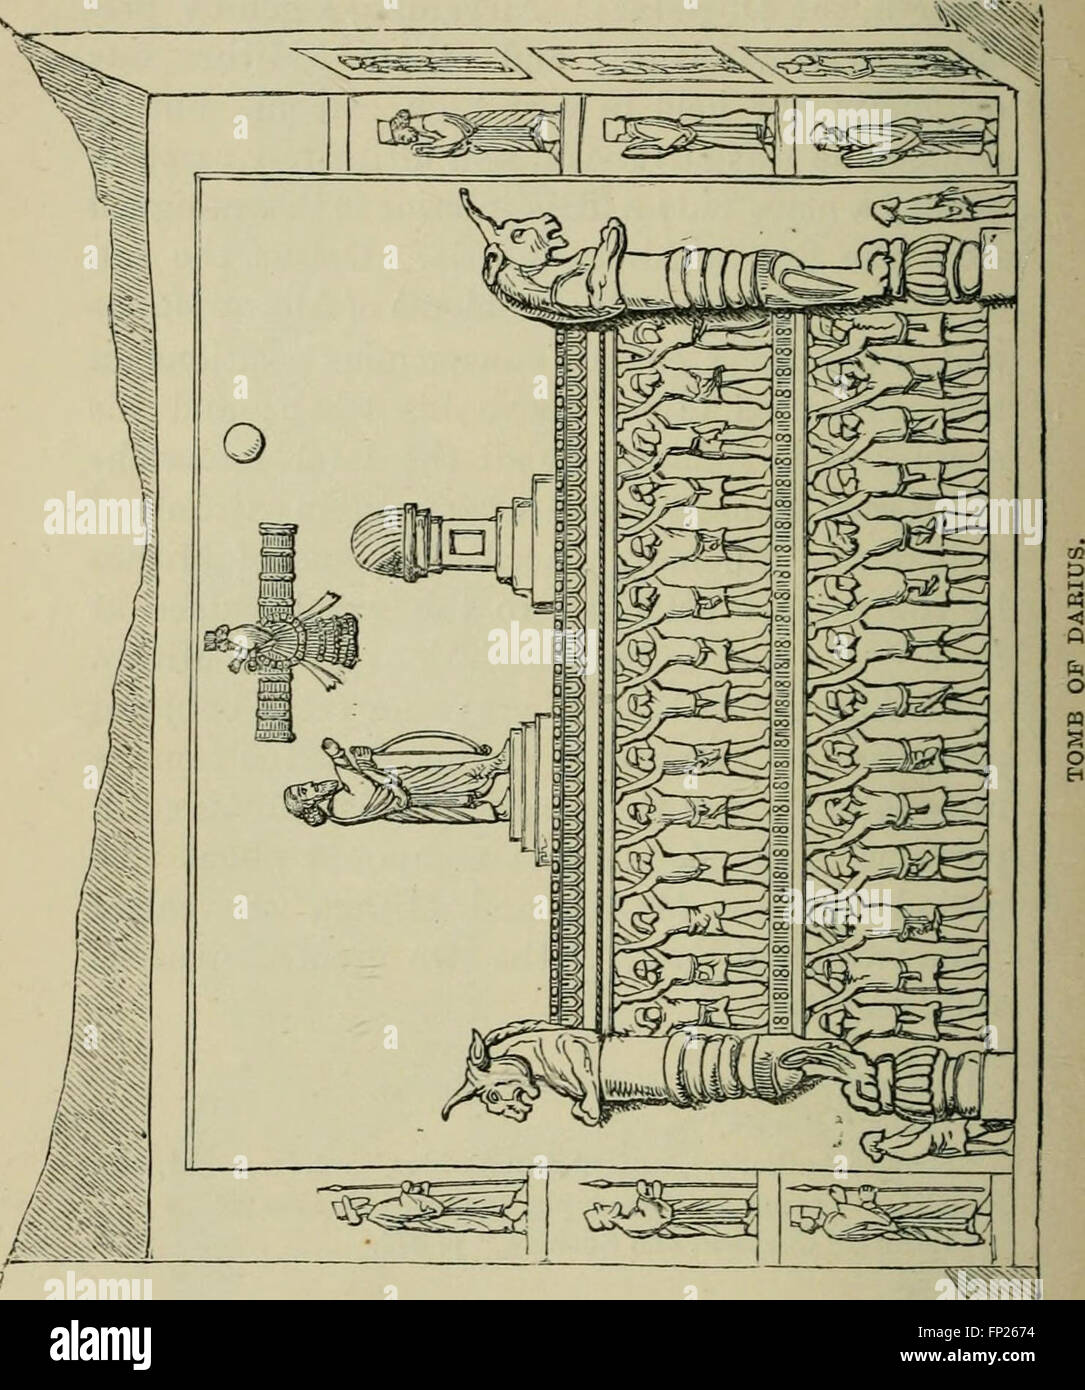 Religionen der alten Welt, einschließlich Ägypten, Assyrien und Babylonien, Persien, Indien, Phönizien, Etrurien, Griechenland, Rom (1880) Stockfoto